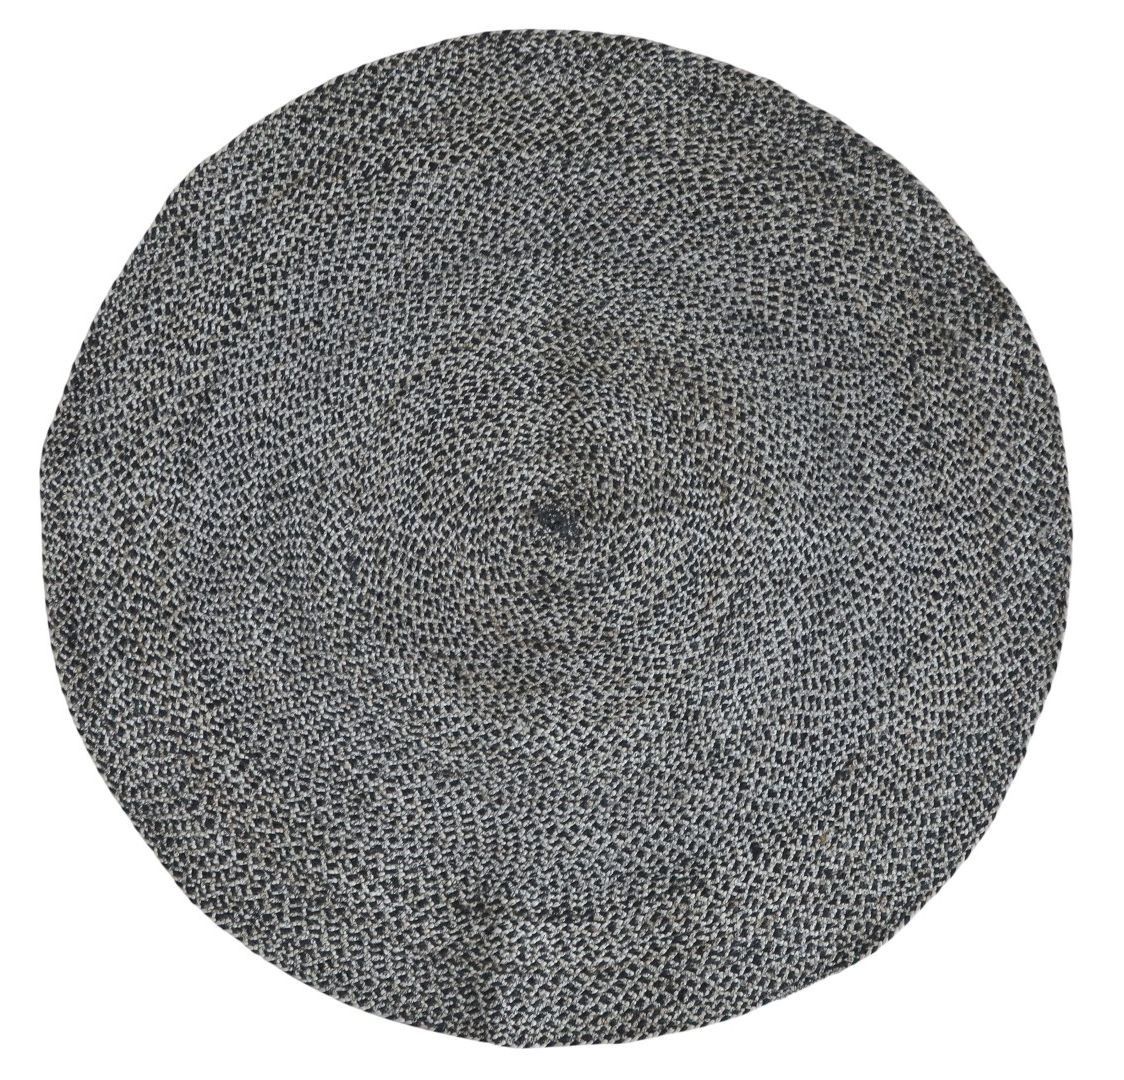 Prírodne - čierny okrúhly jutový koberec Bruno - Ø 120 cm